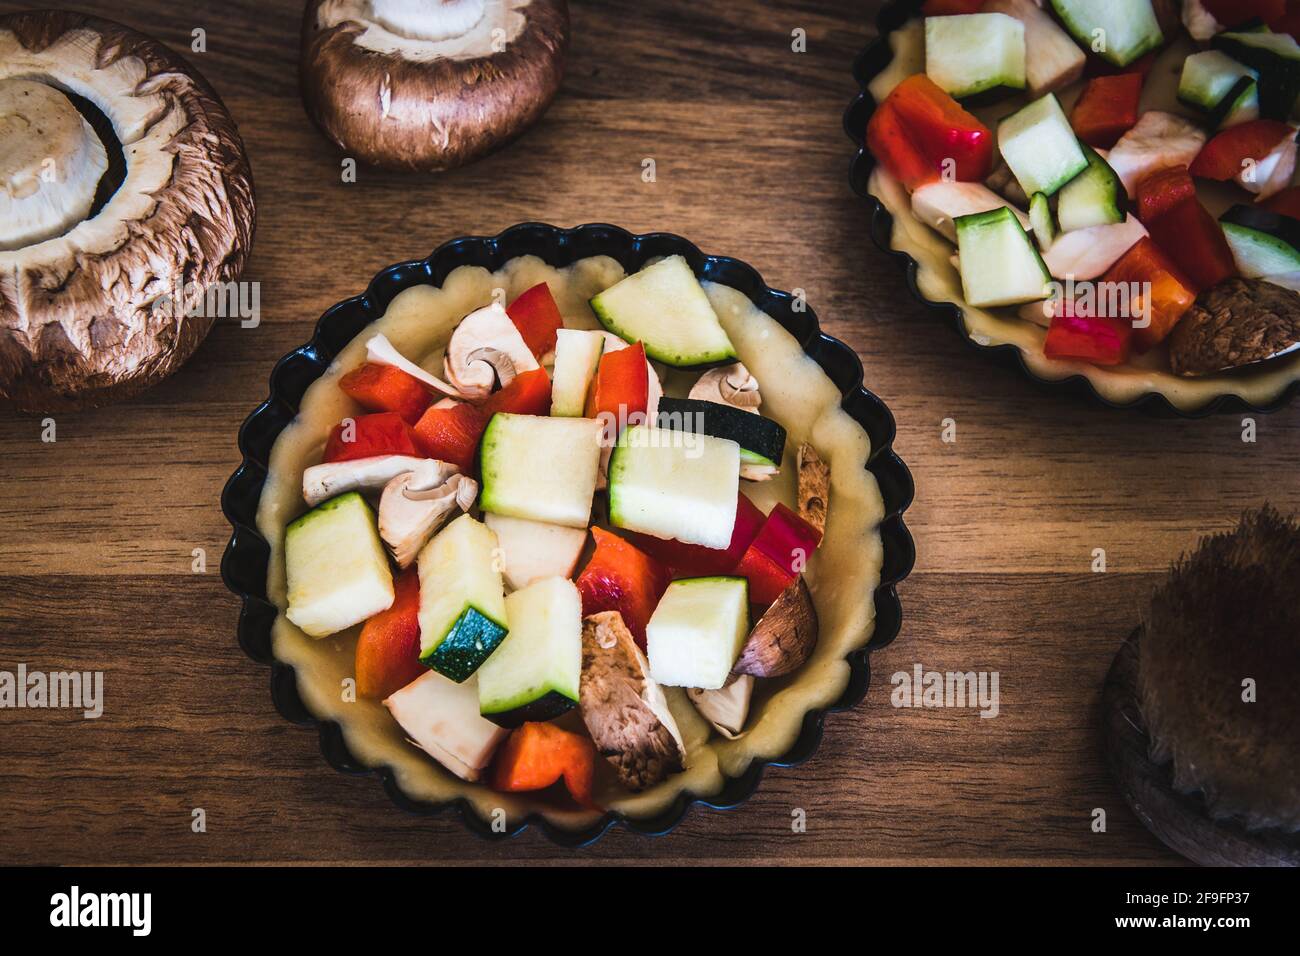 Gros plan de tartelettes de légumes crus dans des plats à tarte noirs sur une table en bois, préparés pour la cuisson. Banque D'Images